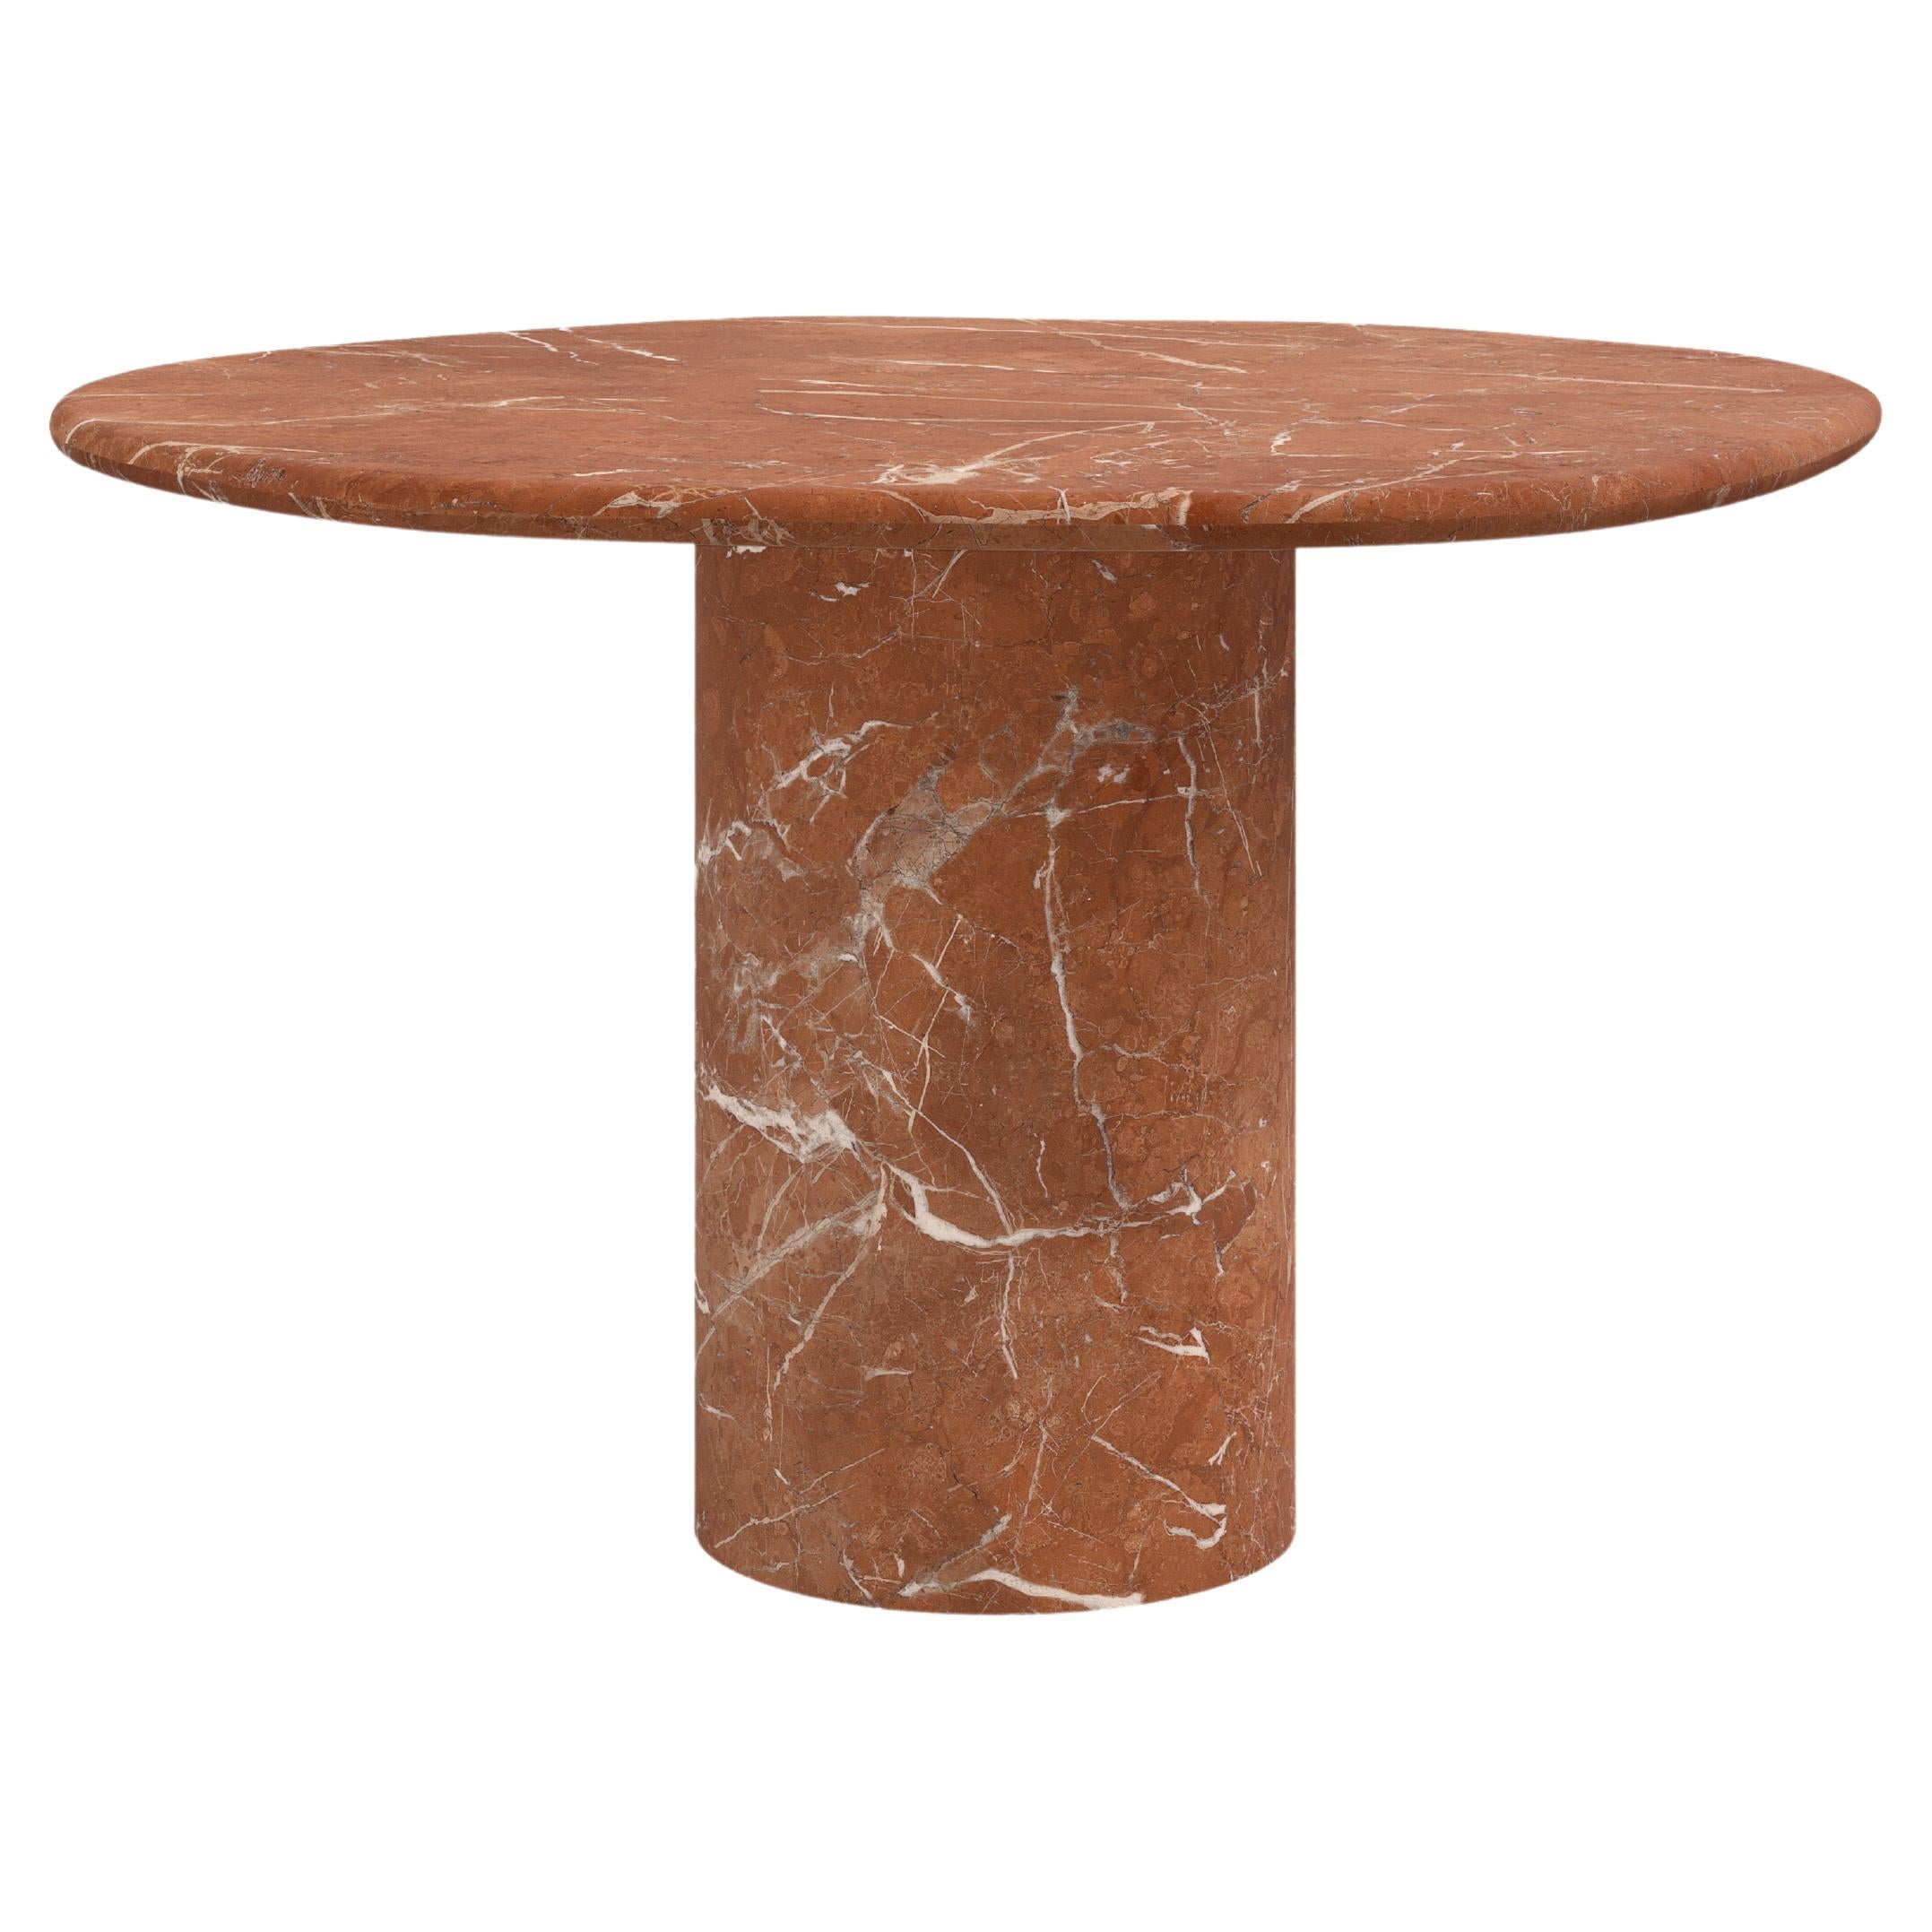 FORM(LA) Lago Round Dining Table 60”L x 60”W x 30”H Rojo Alicante Marble For Sale